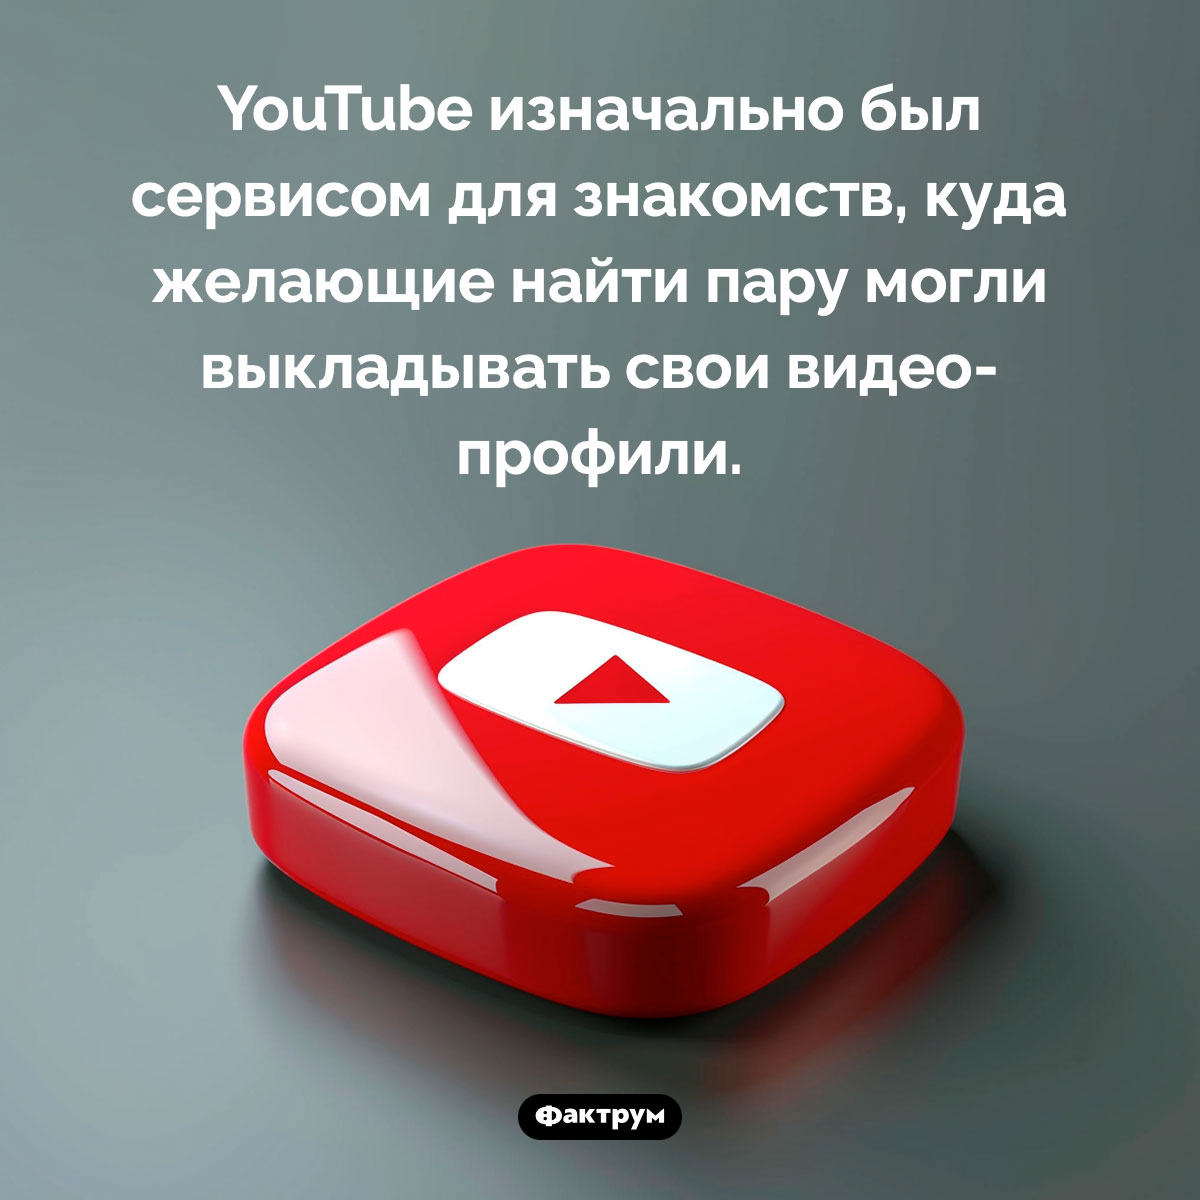 YouTube — сервис для знакомств. YouTube изначально был сервисом для знакомств, куда желающие найти пару могли выкладывать свои видео-профили.